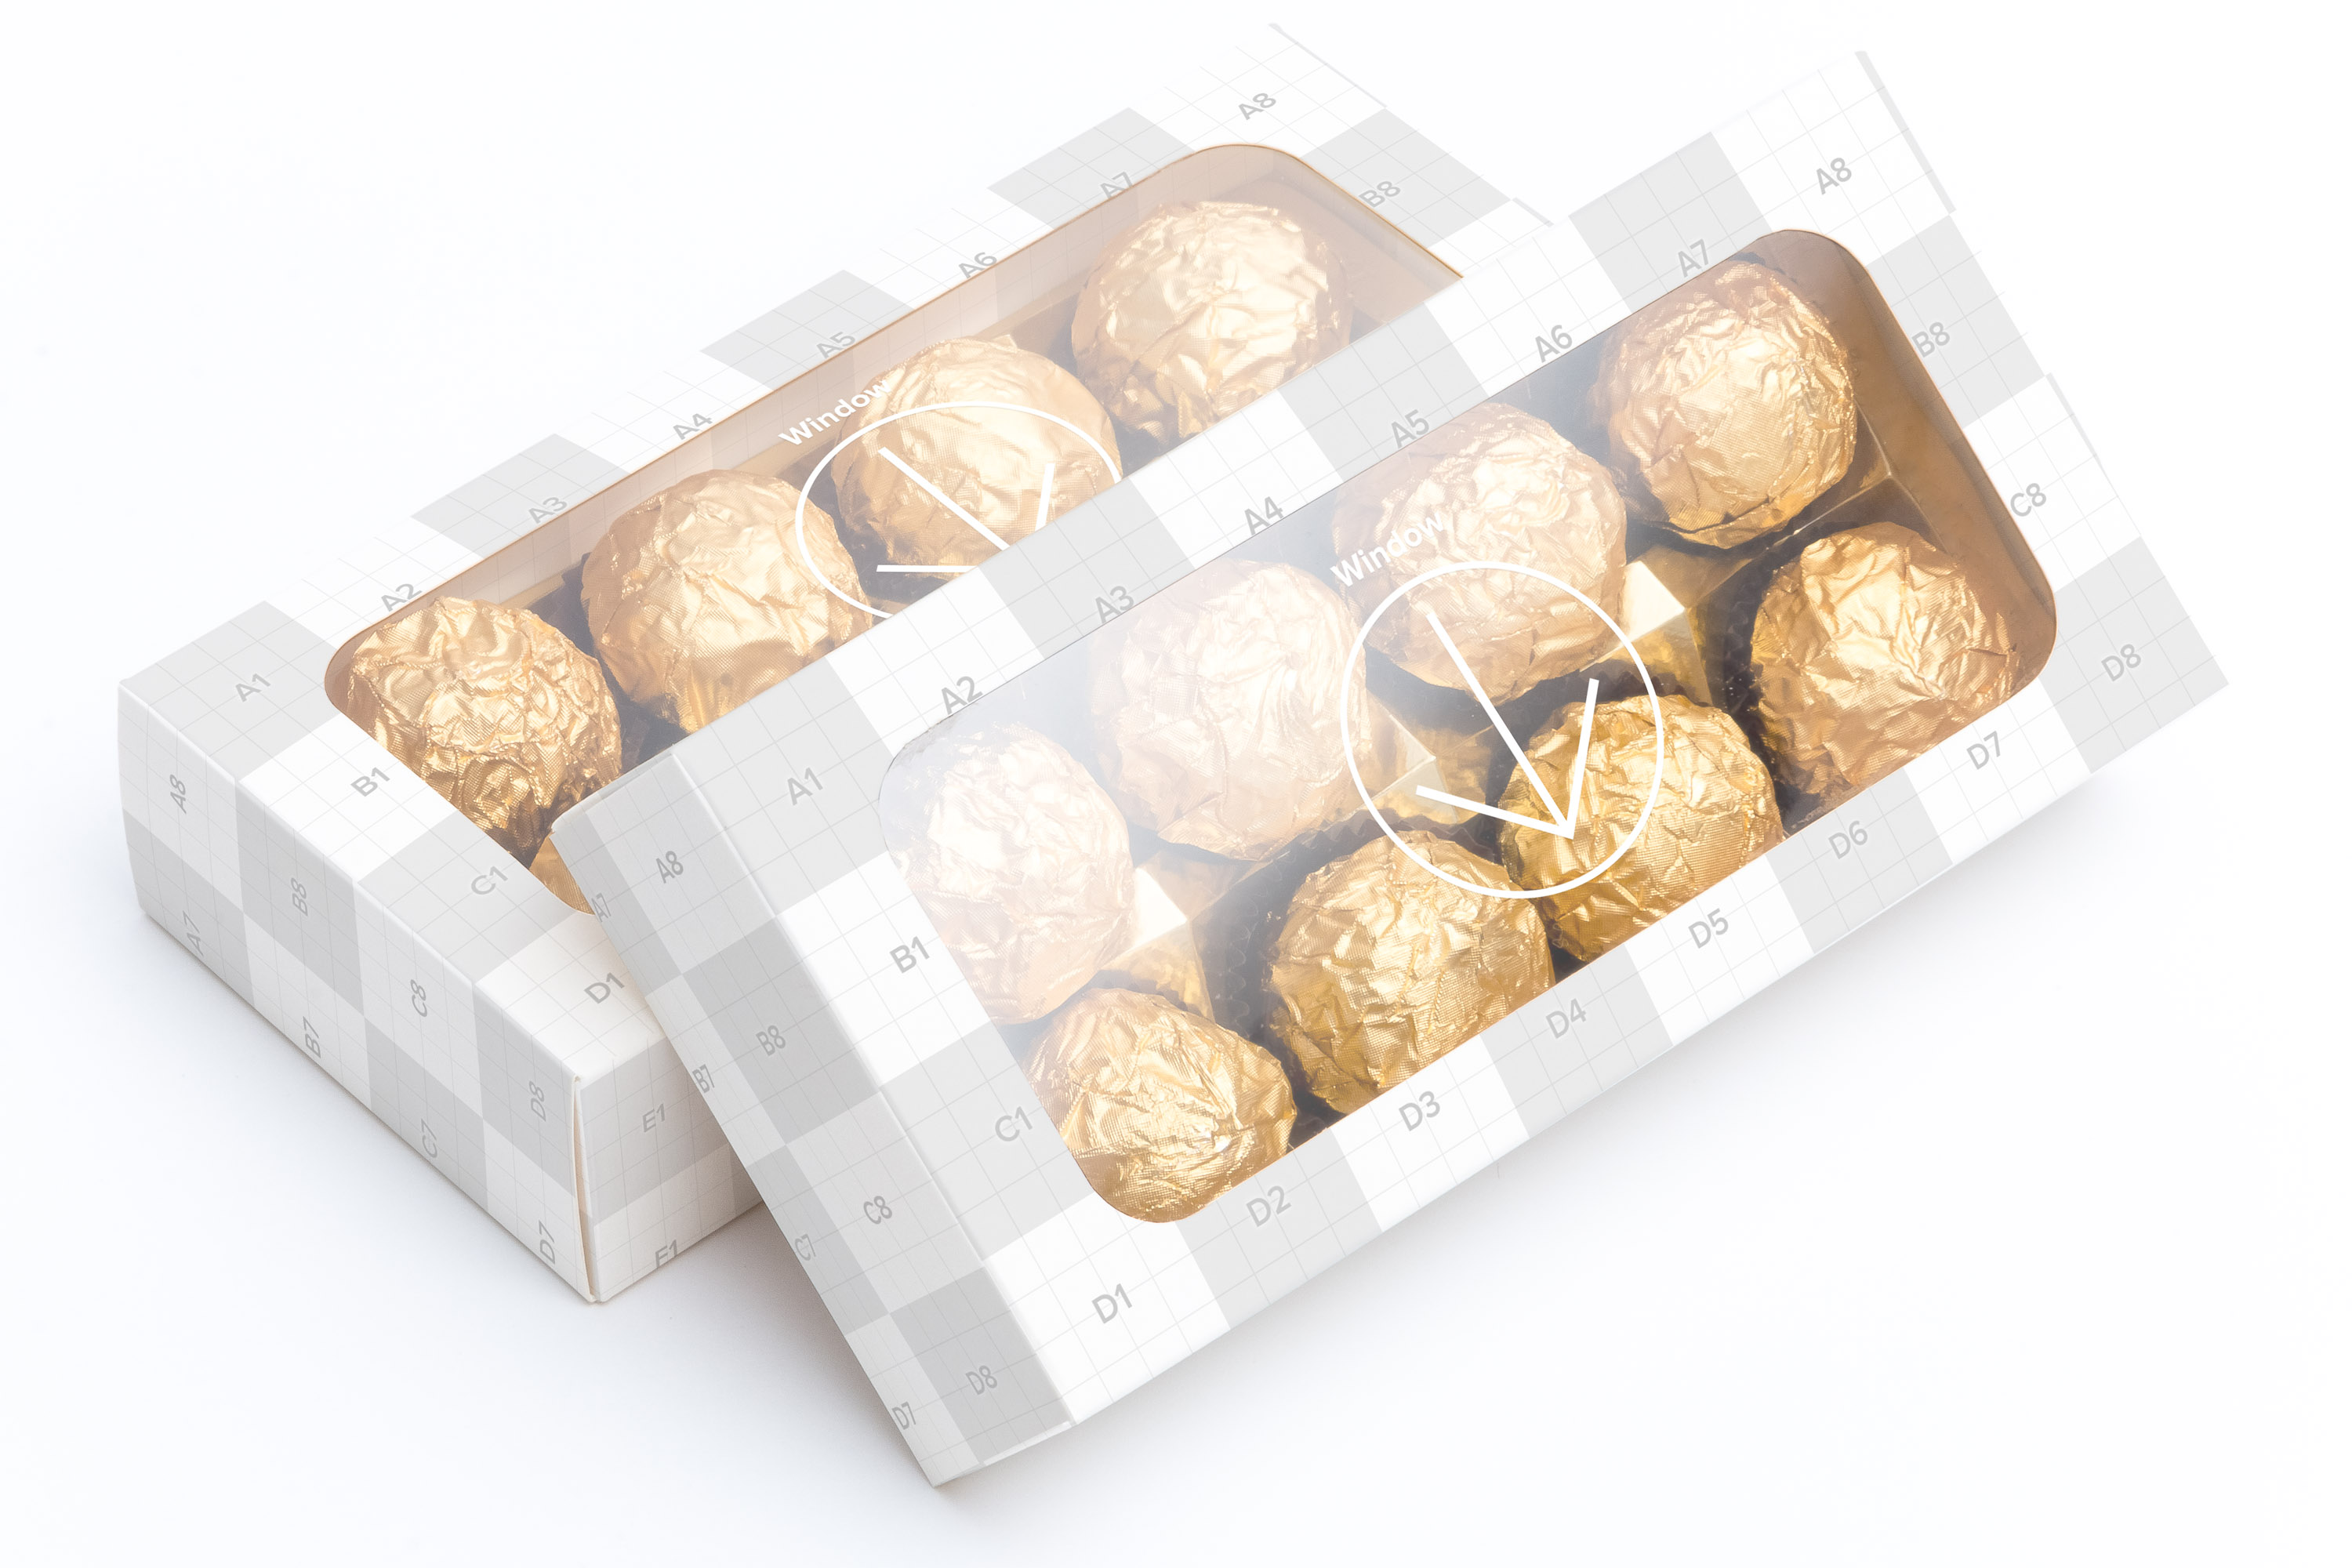 巧克力甜点包装盒外观设计样机07 Sweet Box Mockup 07插图(2)